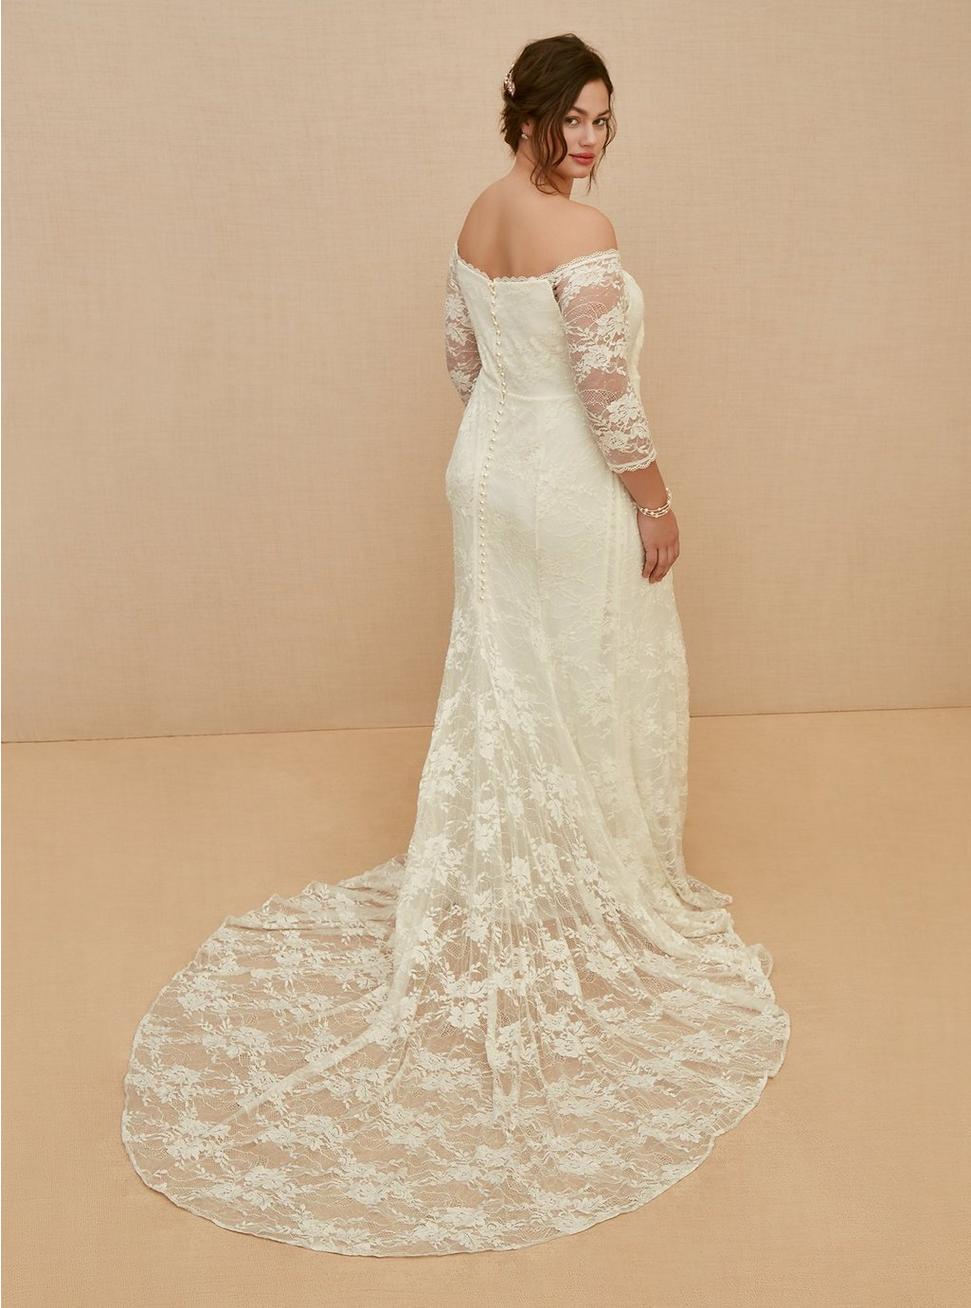 Ivory Off Shoulder Lace & Sequin Wedding Dress, CLOUD DANCER, alternate